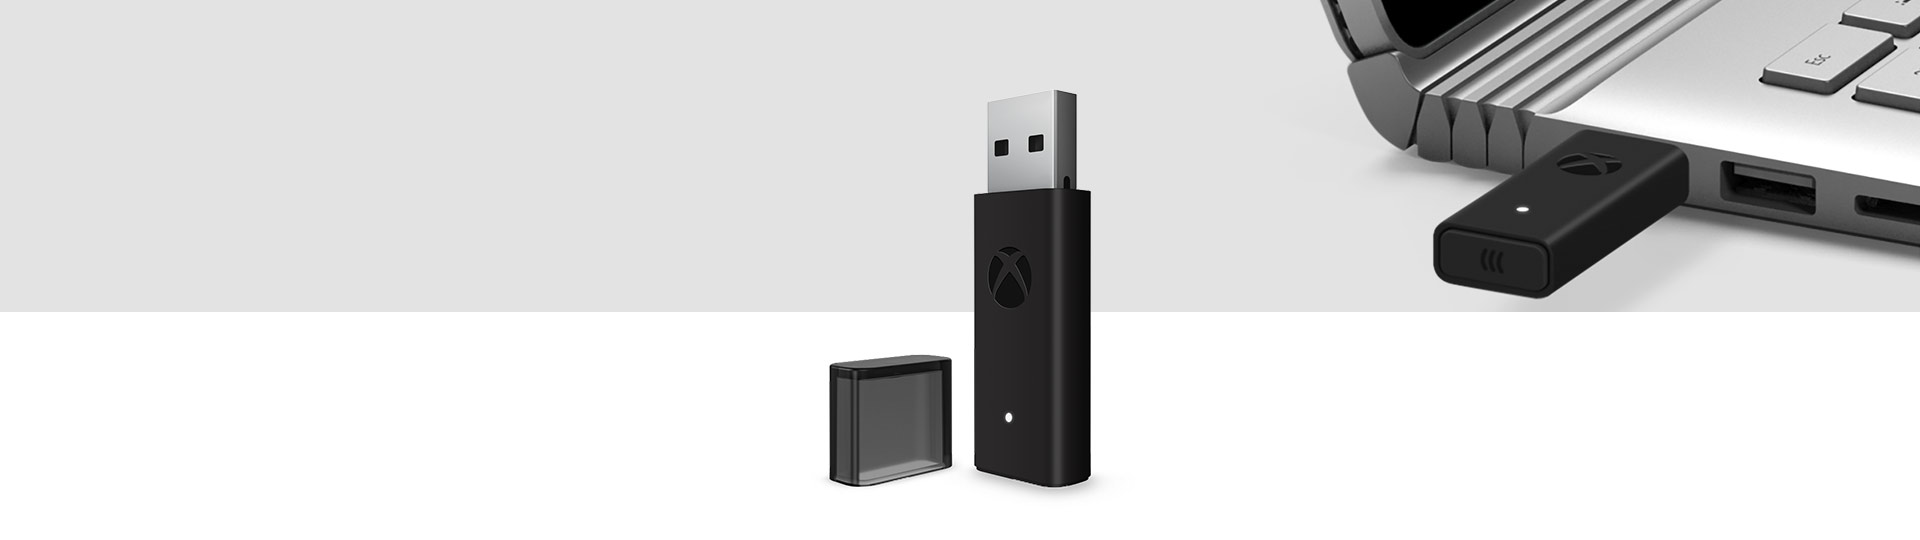 Adaptér ovládača Xbox Wireless Controller pre Windows 10 s bezdrôtovým adaptérom pre Xbox zapojeným do USB portu v prenosnom počítači v pozadí